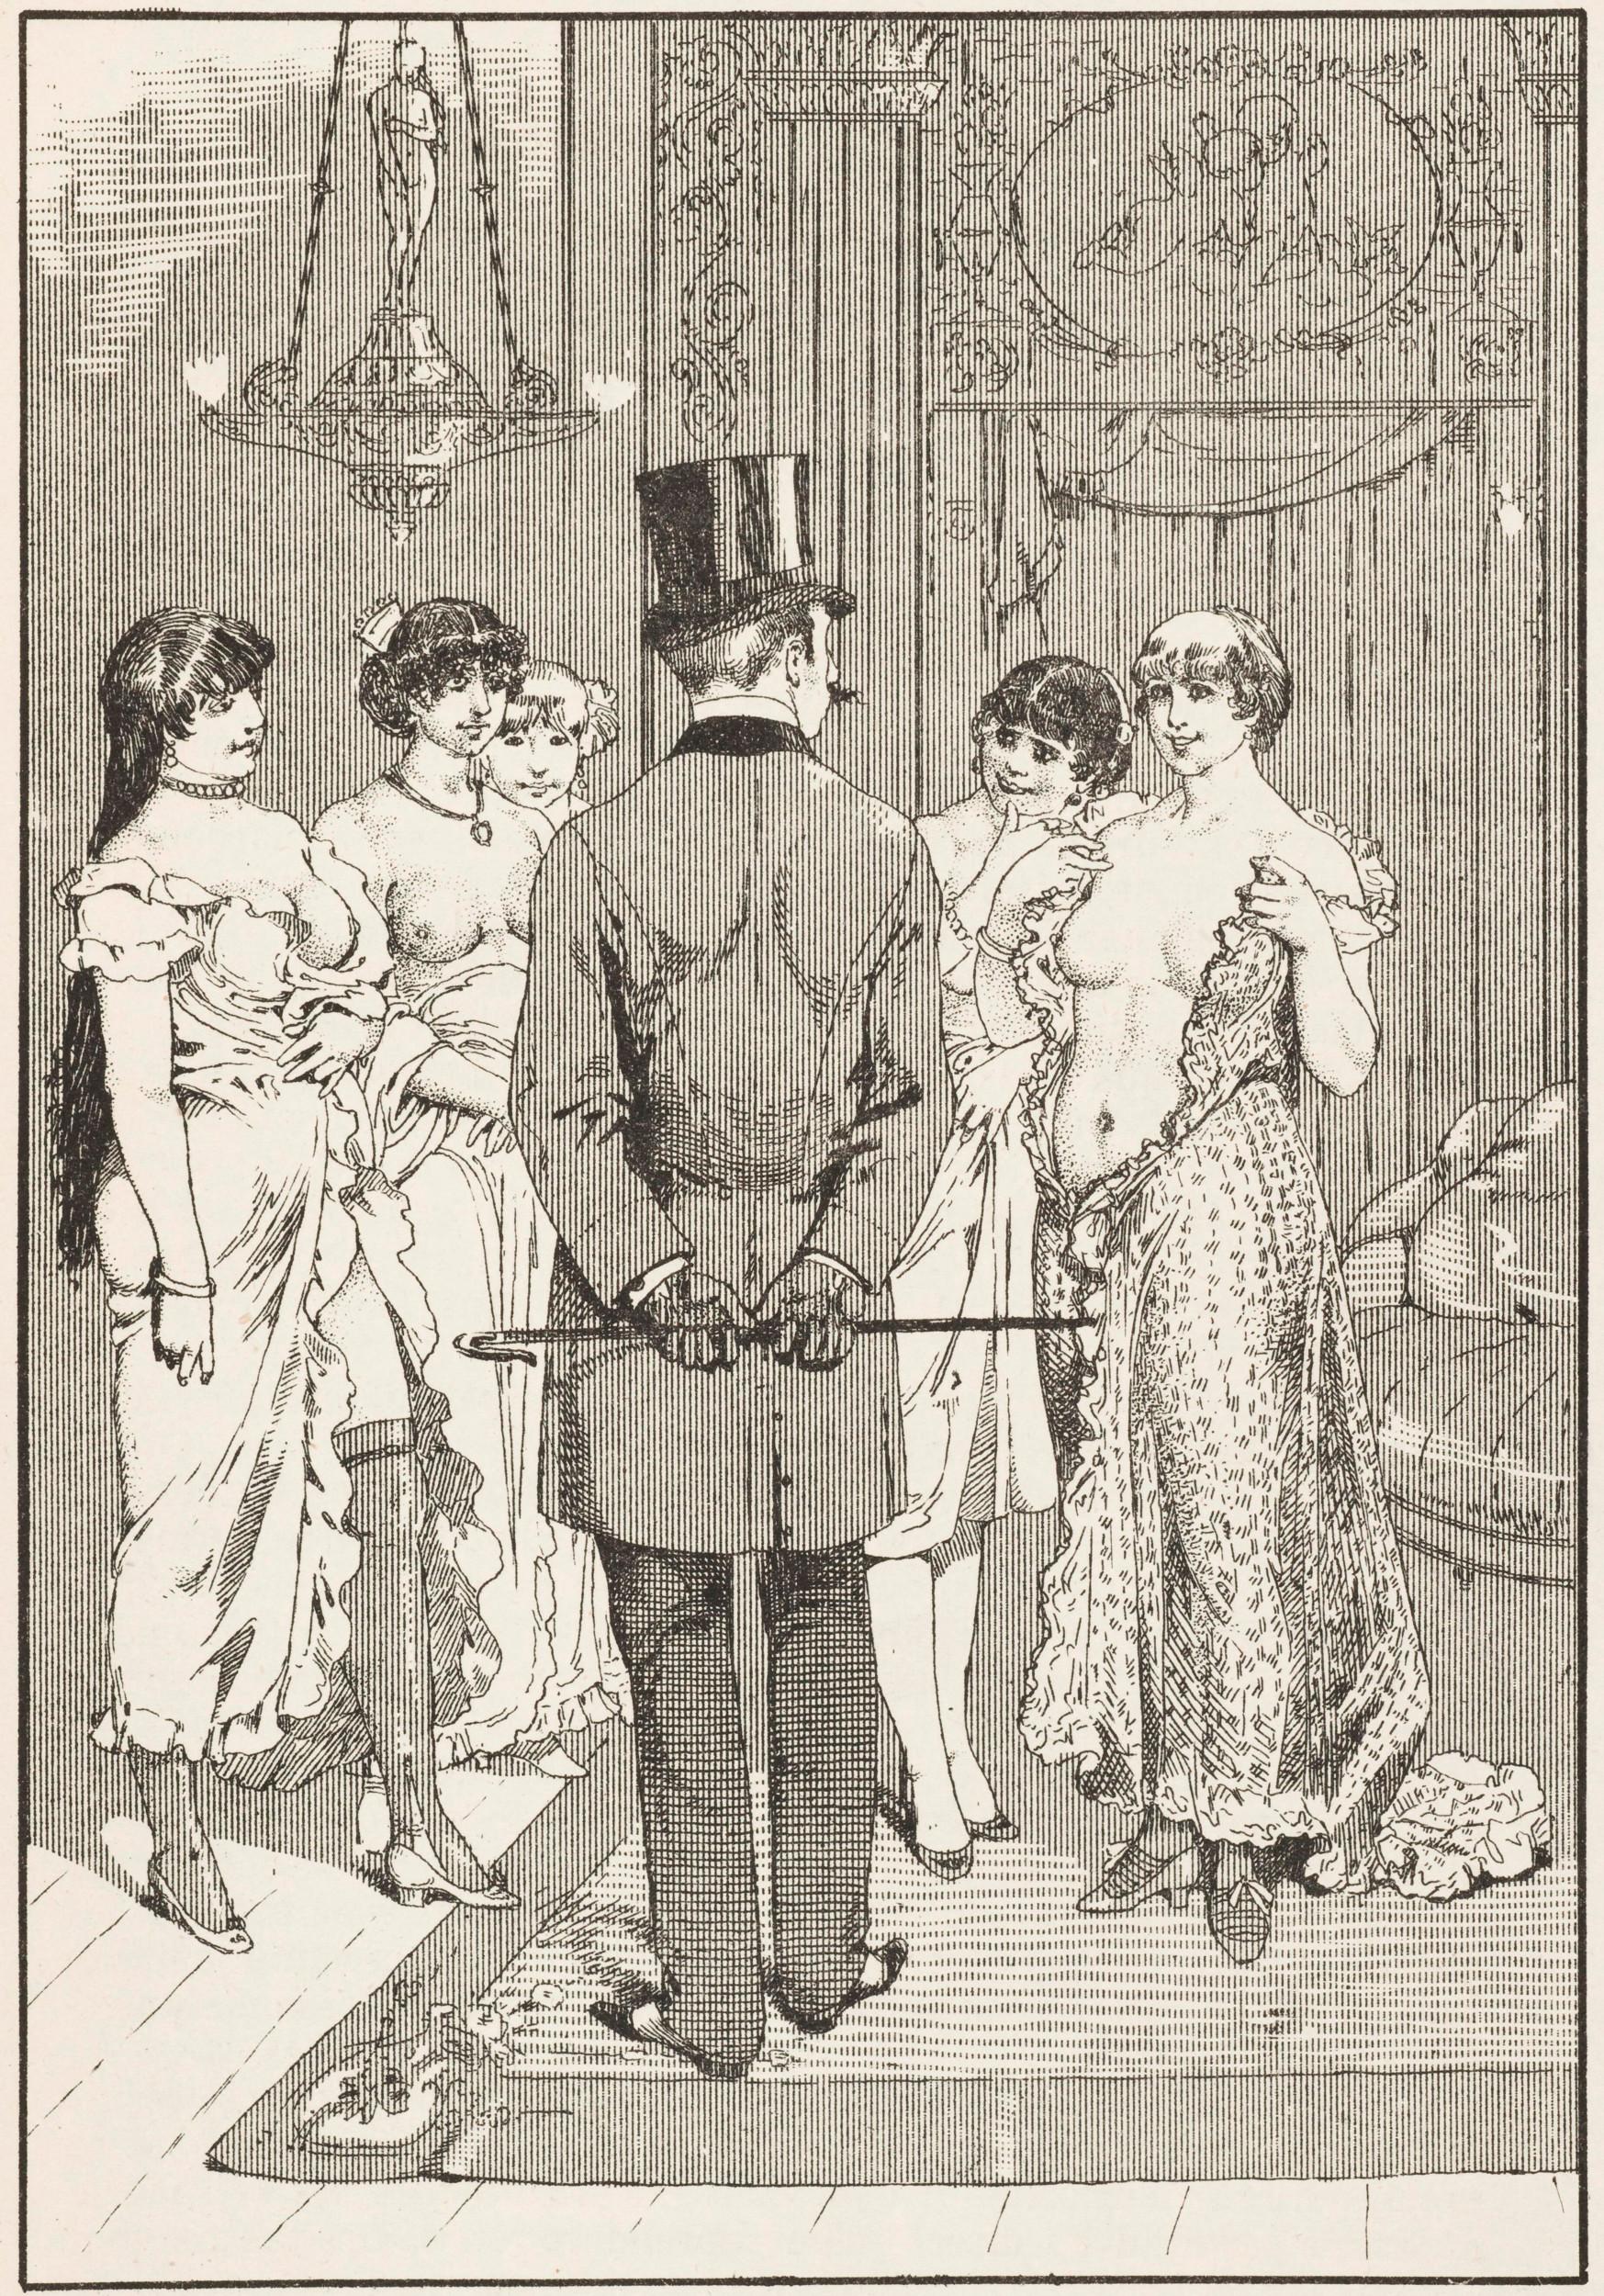  Tegnerens forestilling om et bordel. Ill. i fransk magasin, 1890’erne.